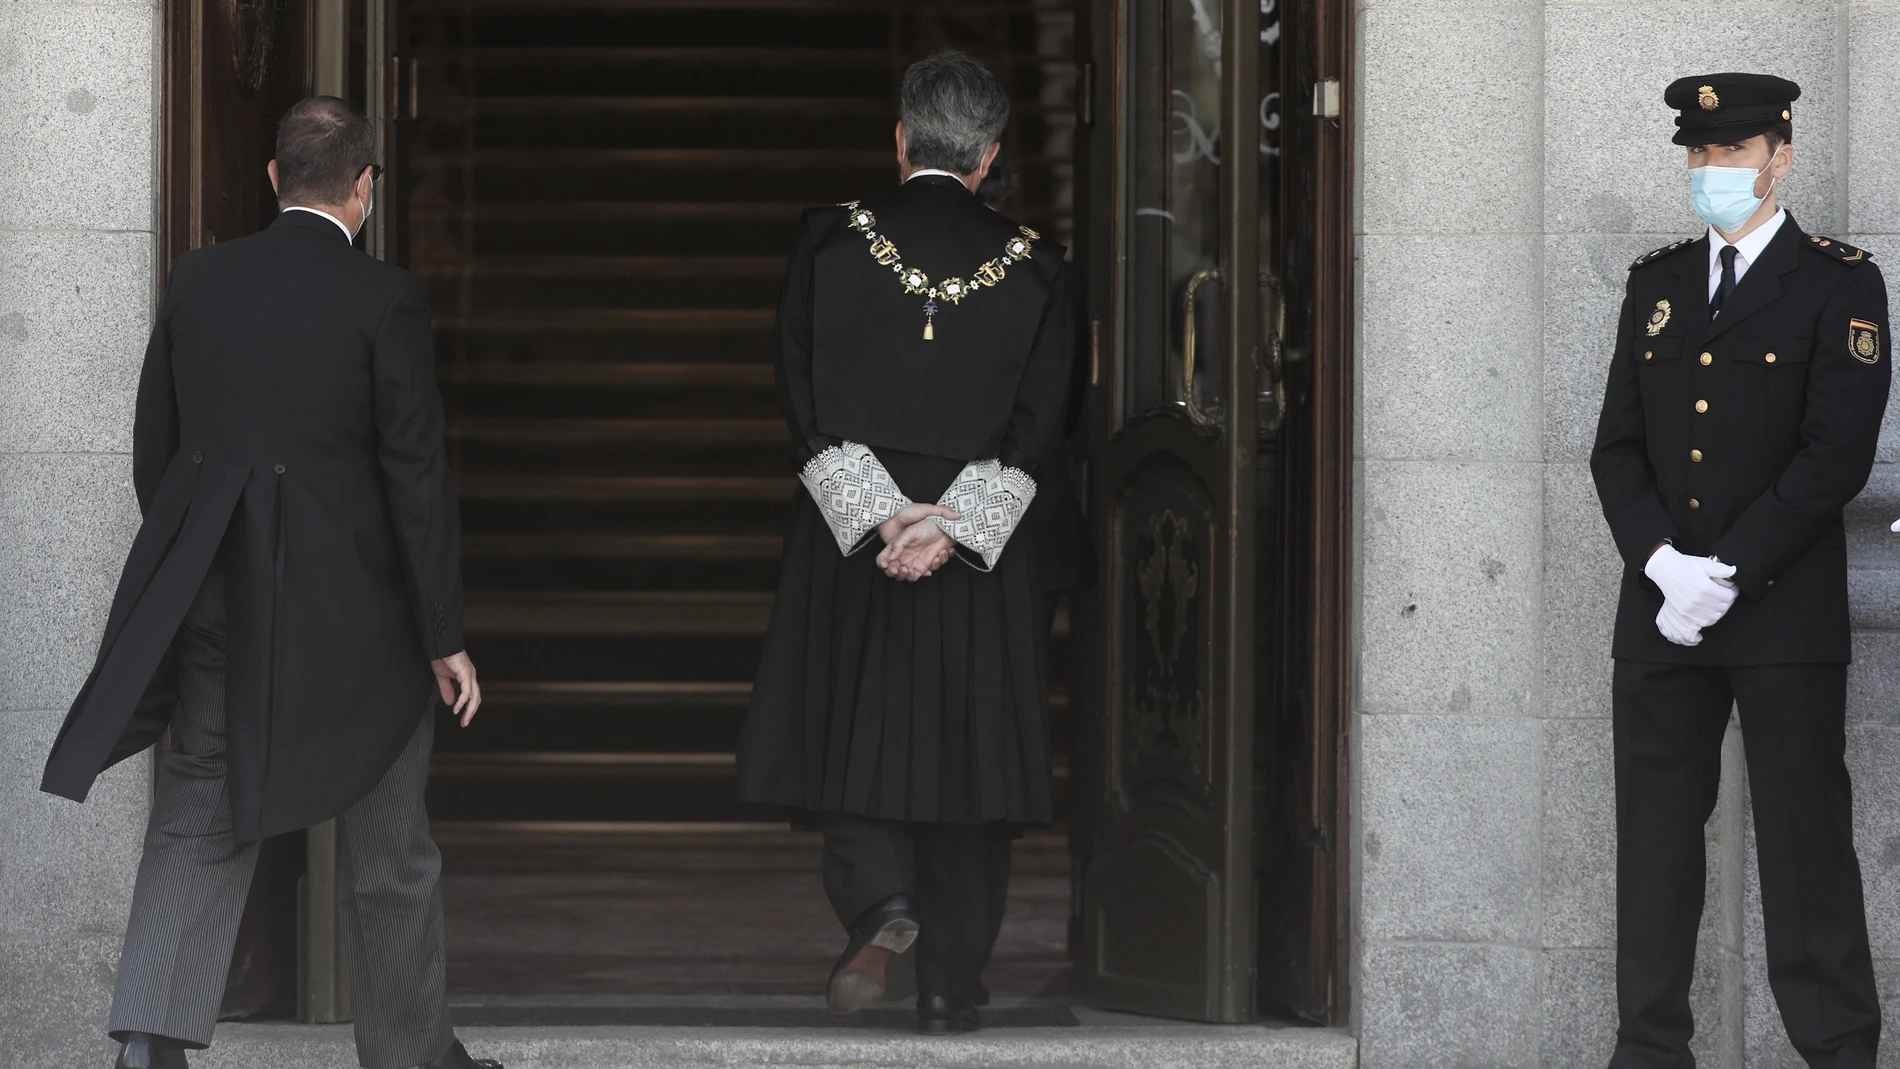 El presidente del Tribunal Supremo y del Consejo General del Poder Judicial (CGPJ), Carlos Lesmes, entra al Palacio de Justicia para asistir al acto de apertura del año judicial